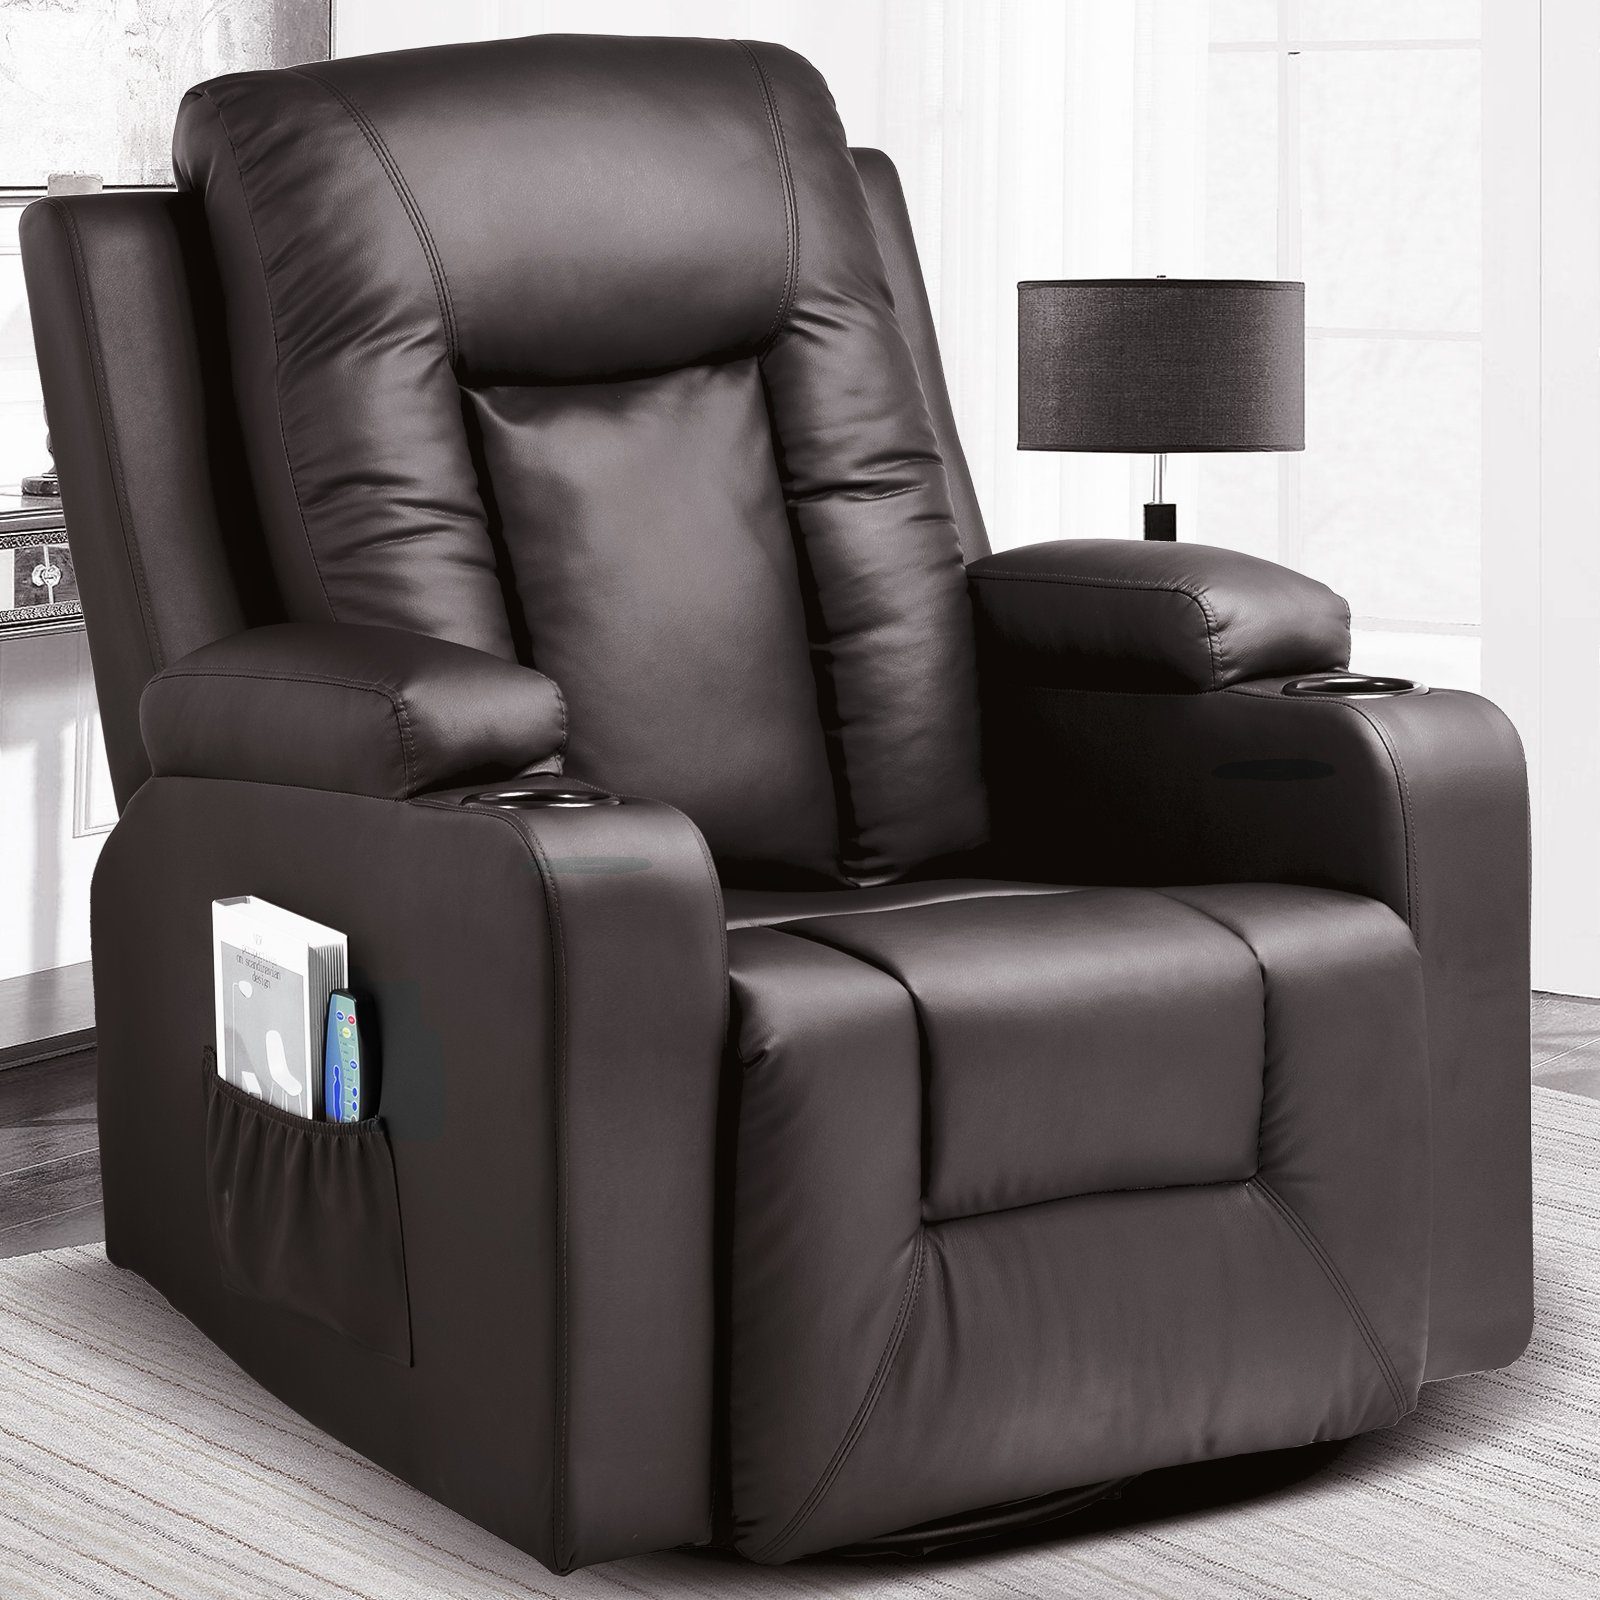 COMHOMA Relaxsessel TV Sessel mit Massage/Wippfun-und Wärmefunktion Heizung-Rückenlehne, mit 2 Seitentaschen und Getränkehalter Braun | Sessel